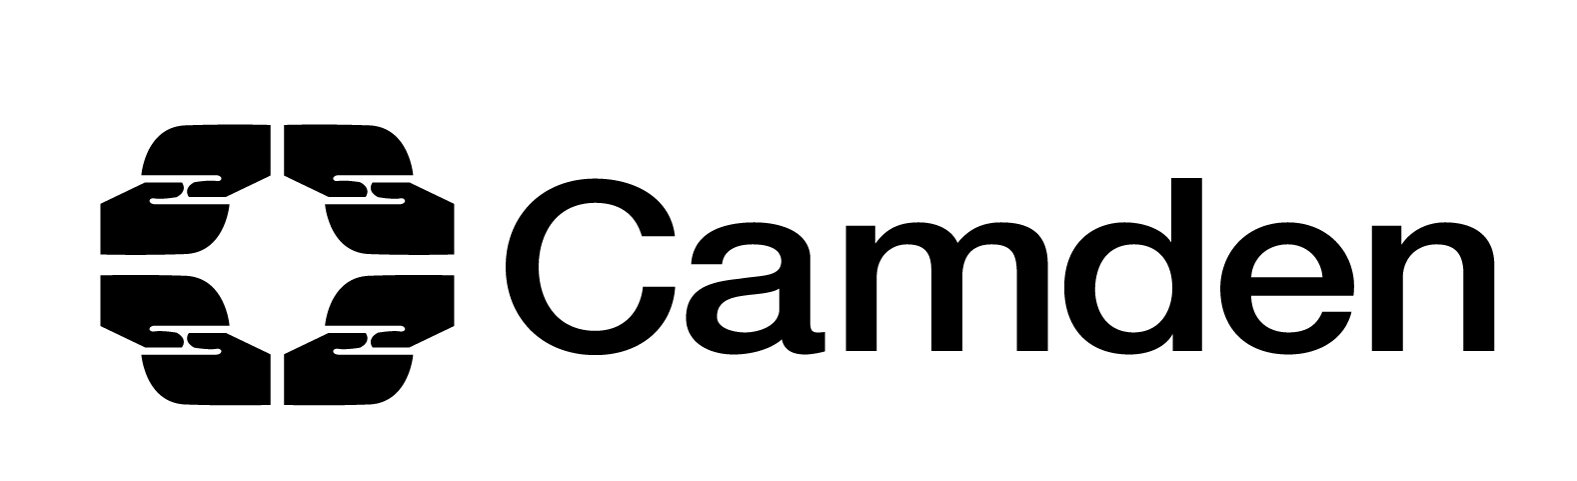 camden-council-logo.jpg